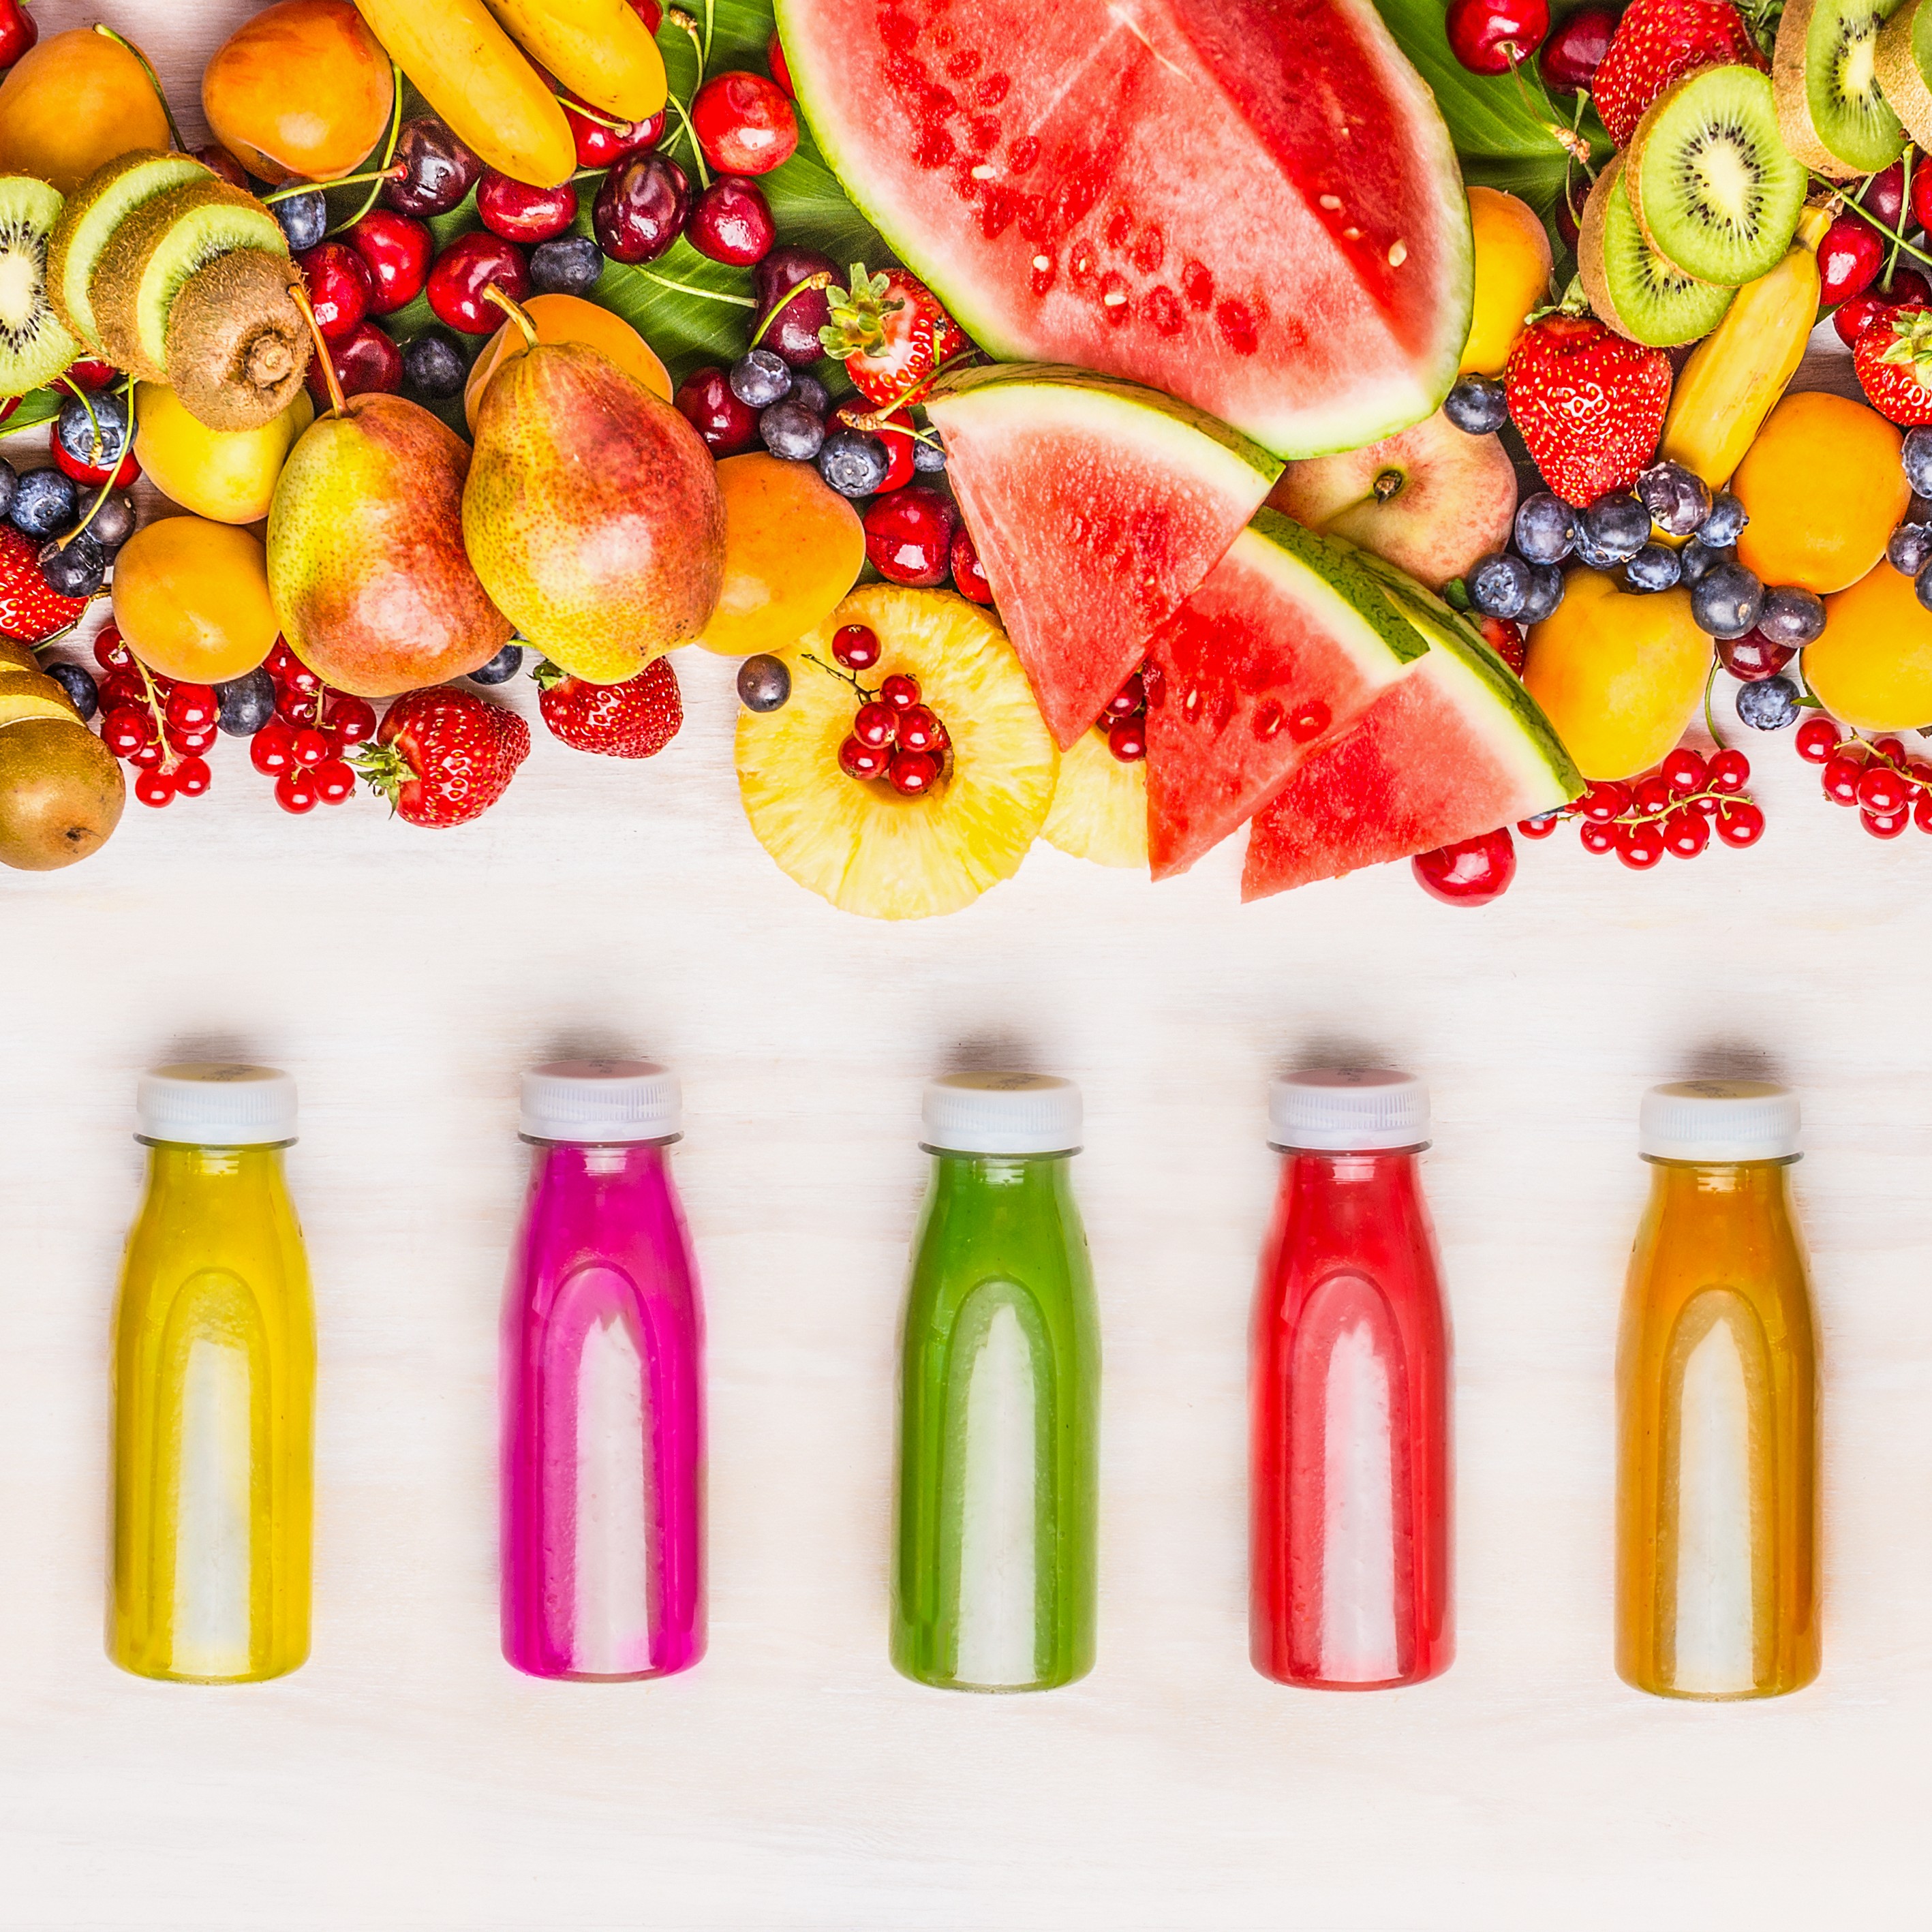 Varietà di frullati colorati e succhi di frutta in bottiglia con vari ingredienti freschi di frutta e bacche organiche su fondo di legno bianco, vista dall'alto.Concetto di cibo sano